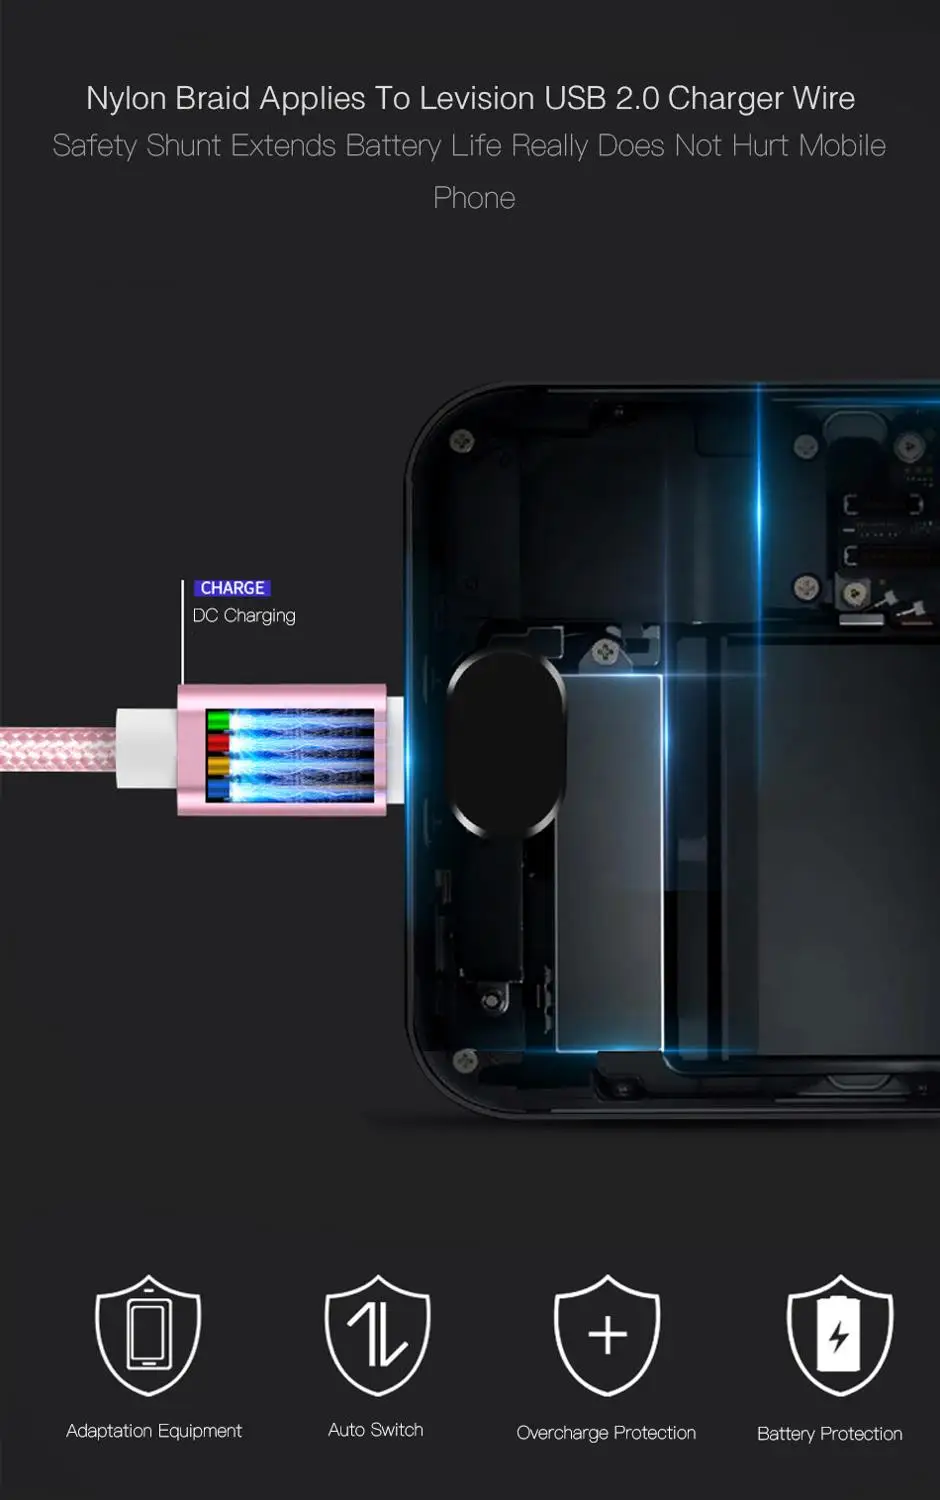 25 см 1 м 2 м 3 м данных USB зарядное устройство кабель для iPhone 6S 6 s 7 8 плюс Xs Max XR X 10 5S iPad Быстрая зарядка V8 длинный провод нейлоновый шнур